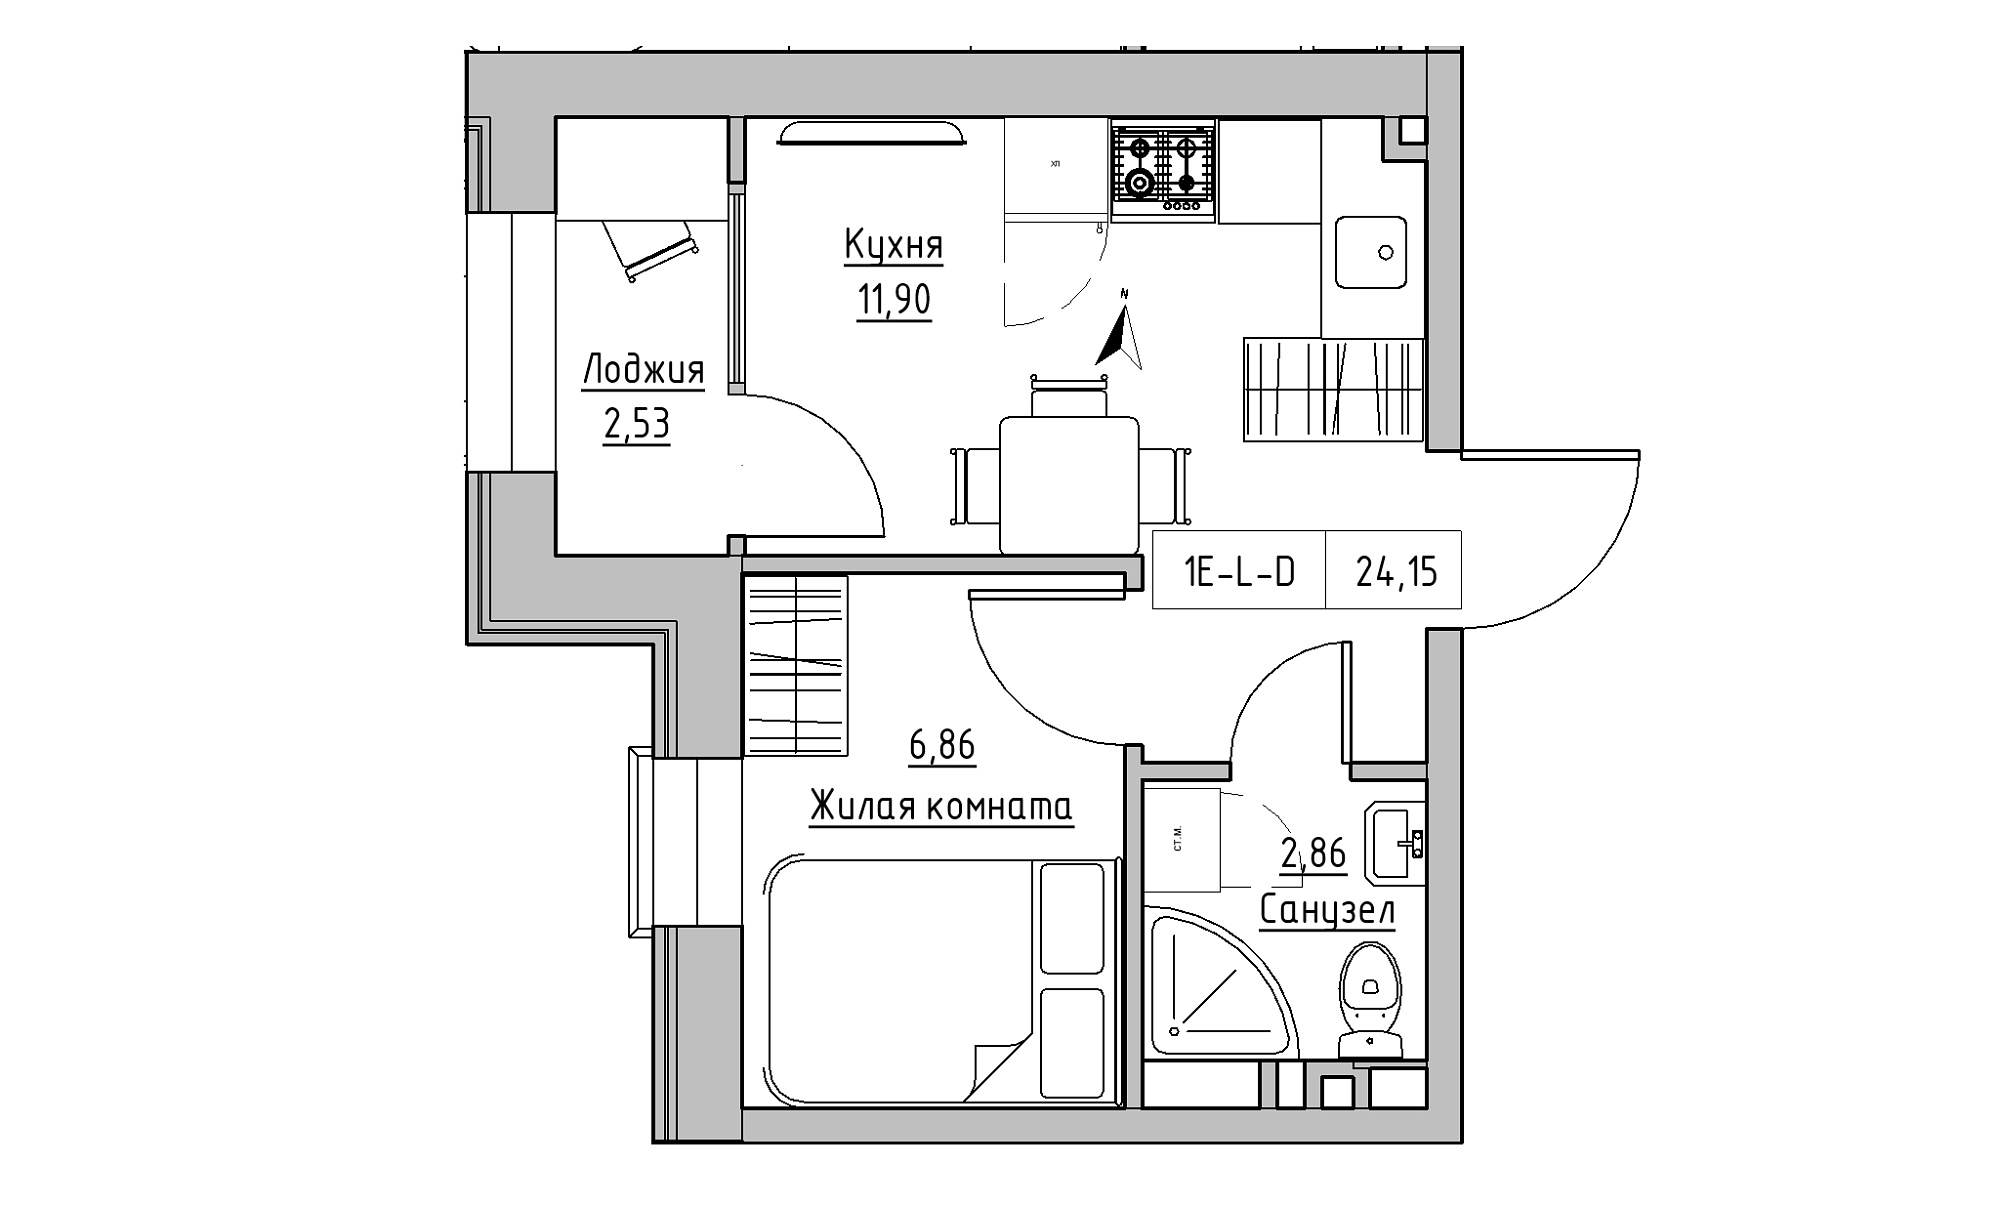 Планировка 1-к квартира площей 24.15м2, KS-023-05/0001.